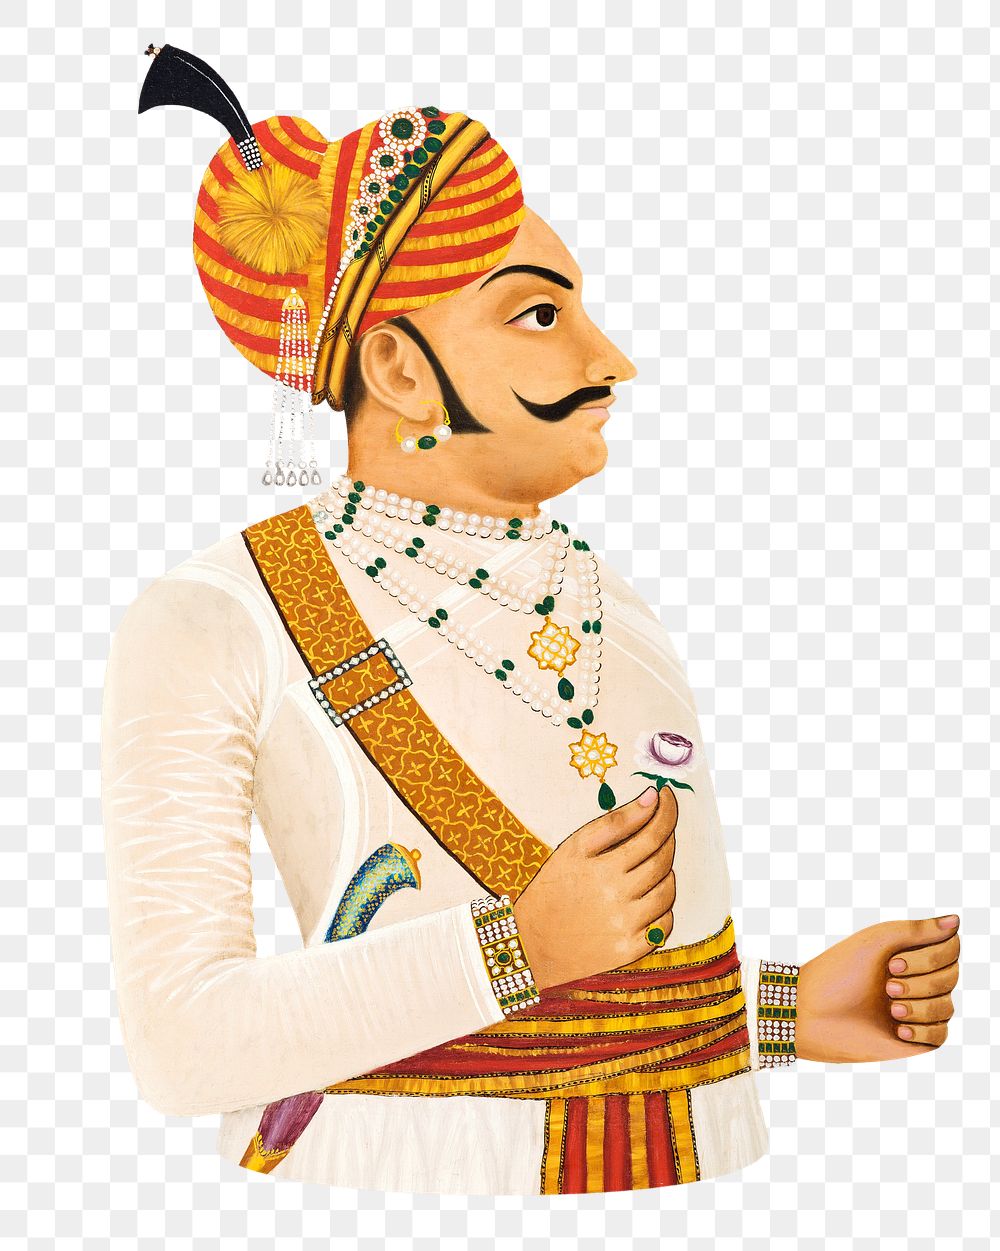 PNG Thakur Yaswanta Singh, vintage man illustration, transparent background. Remixed by rawpixel.